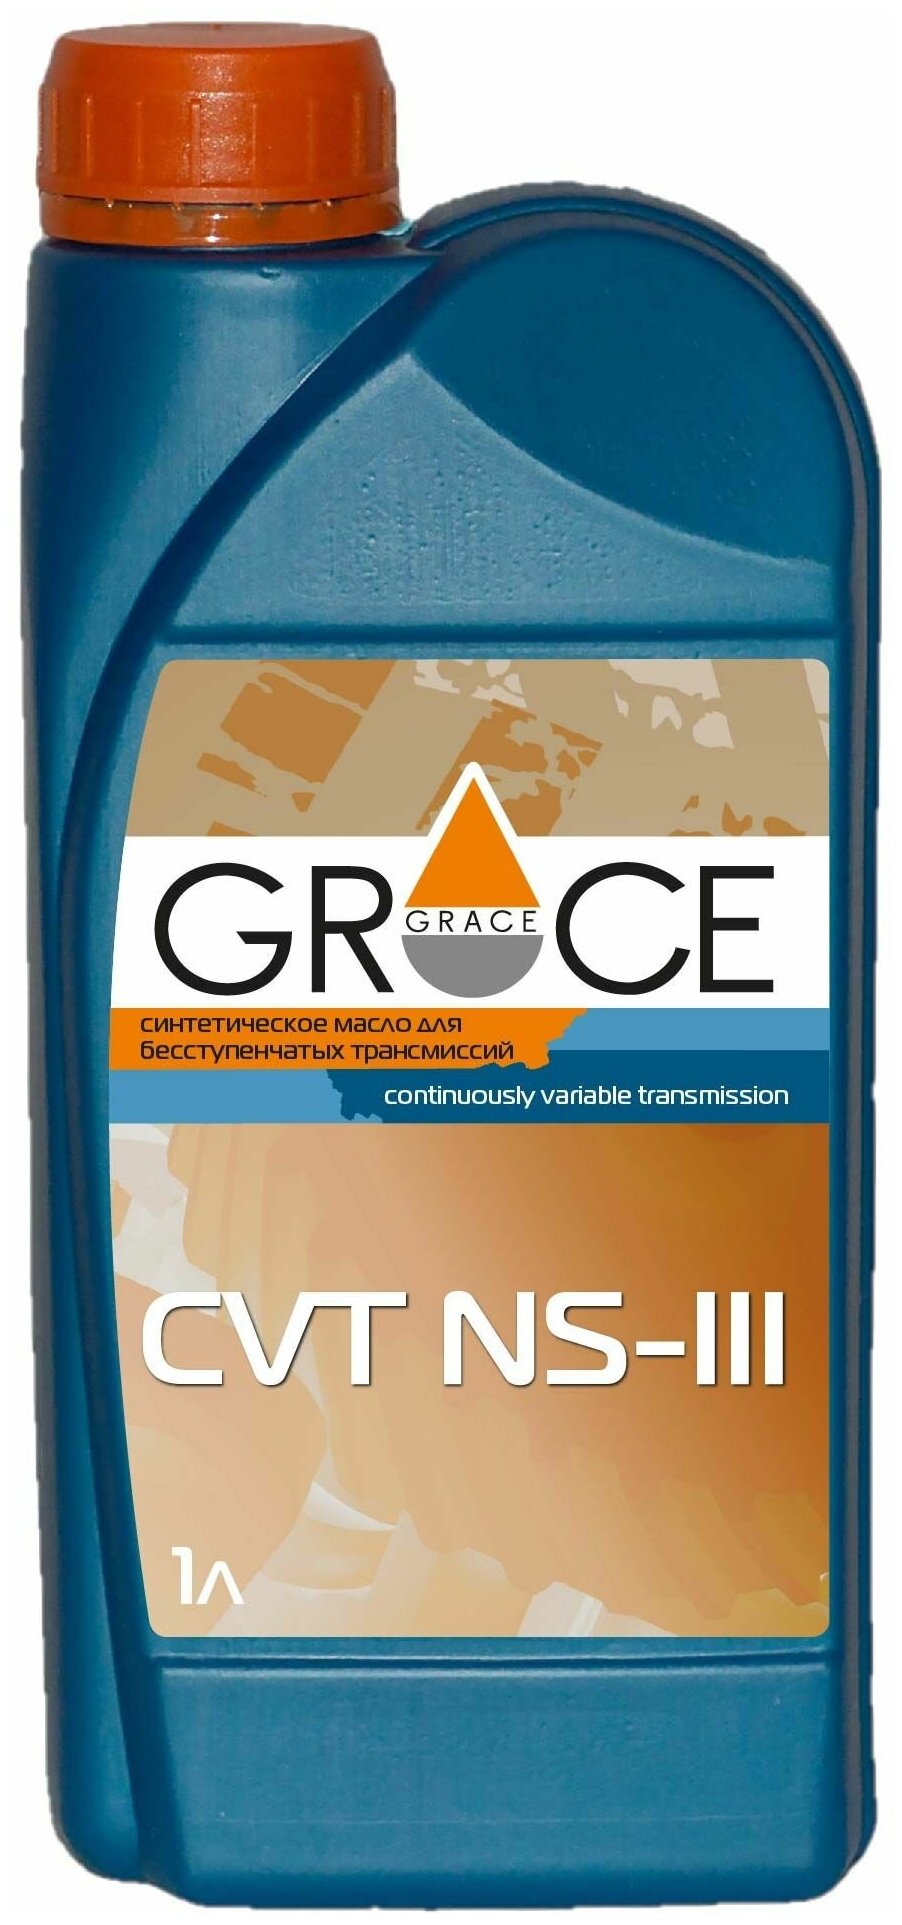 Трансмиссионное масло GRACE CVT NS-III, 1л